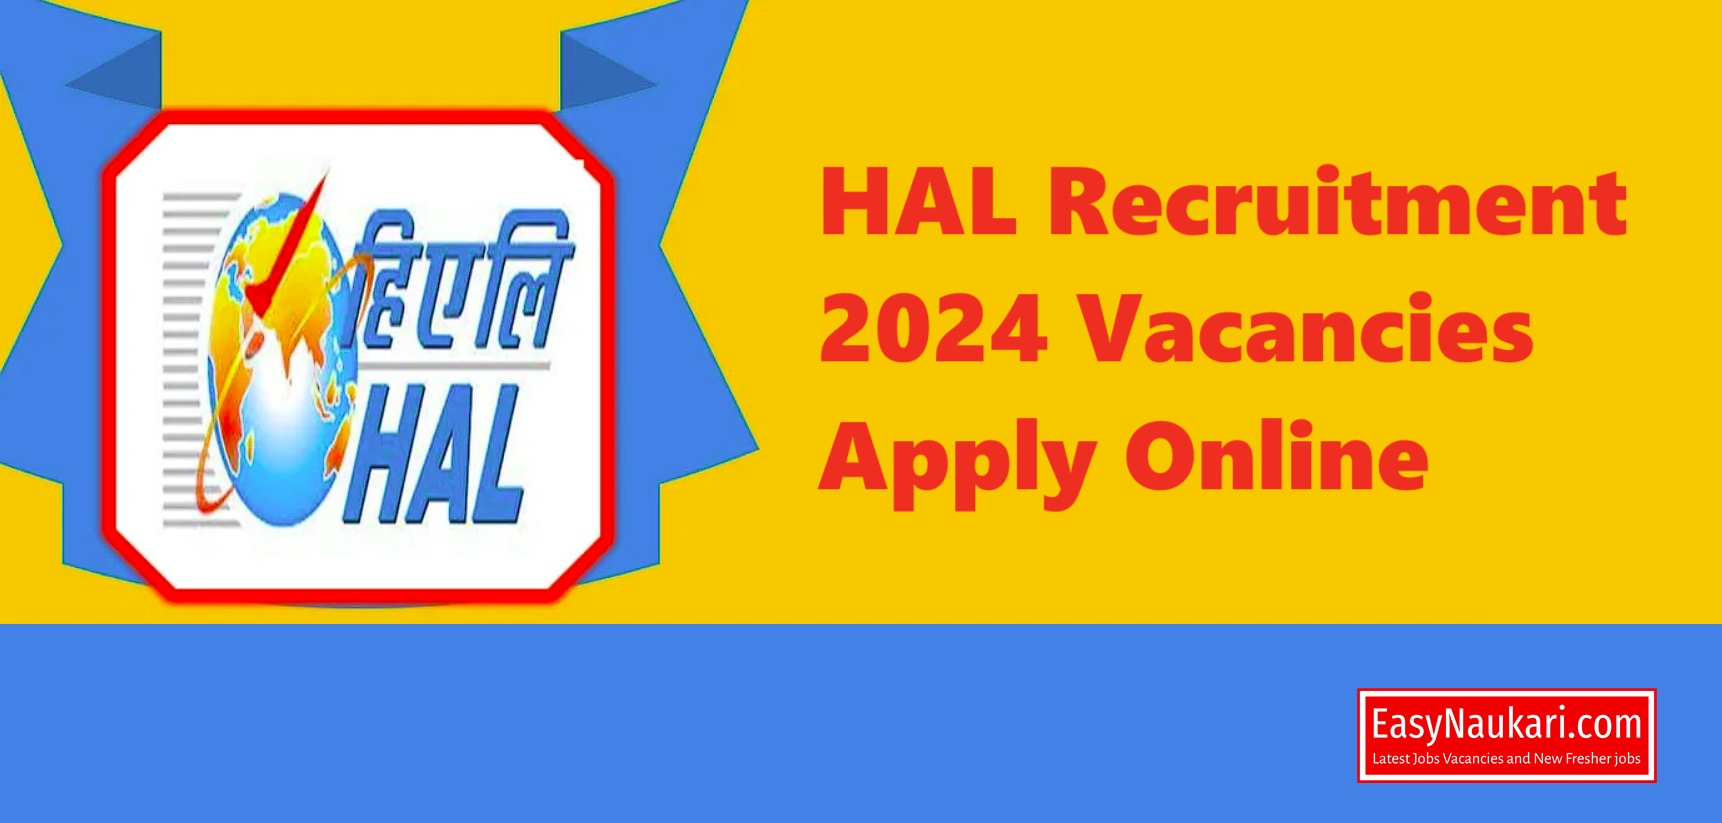 HAL Recruitment 2024 Vacancies Apply Online